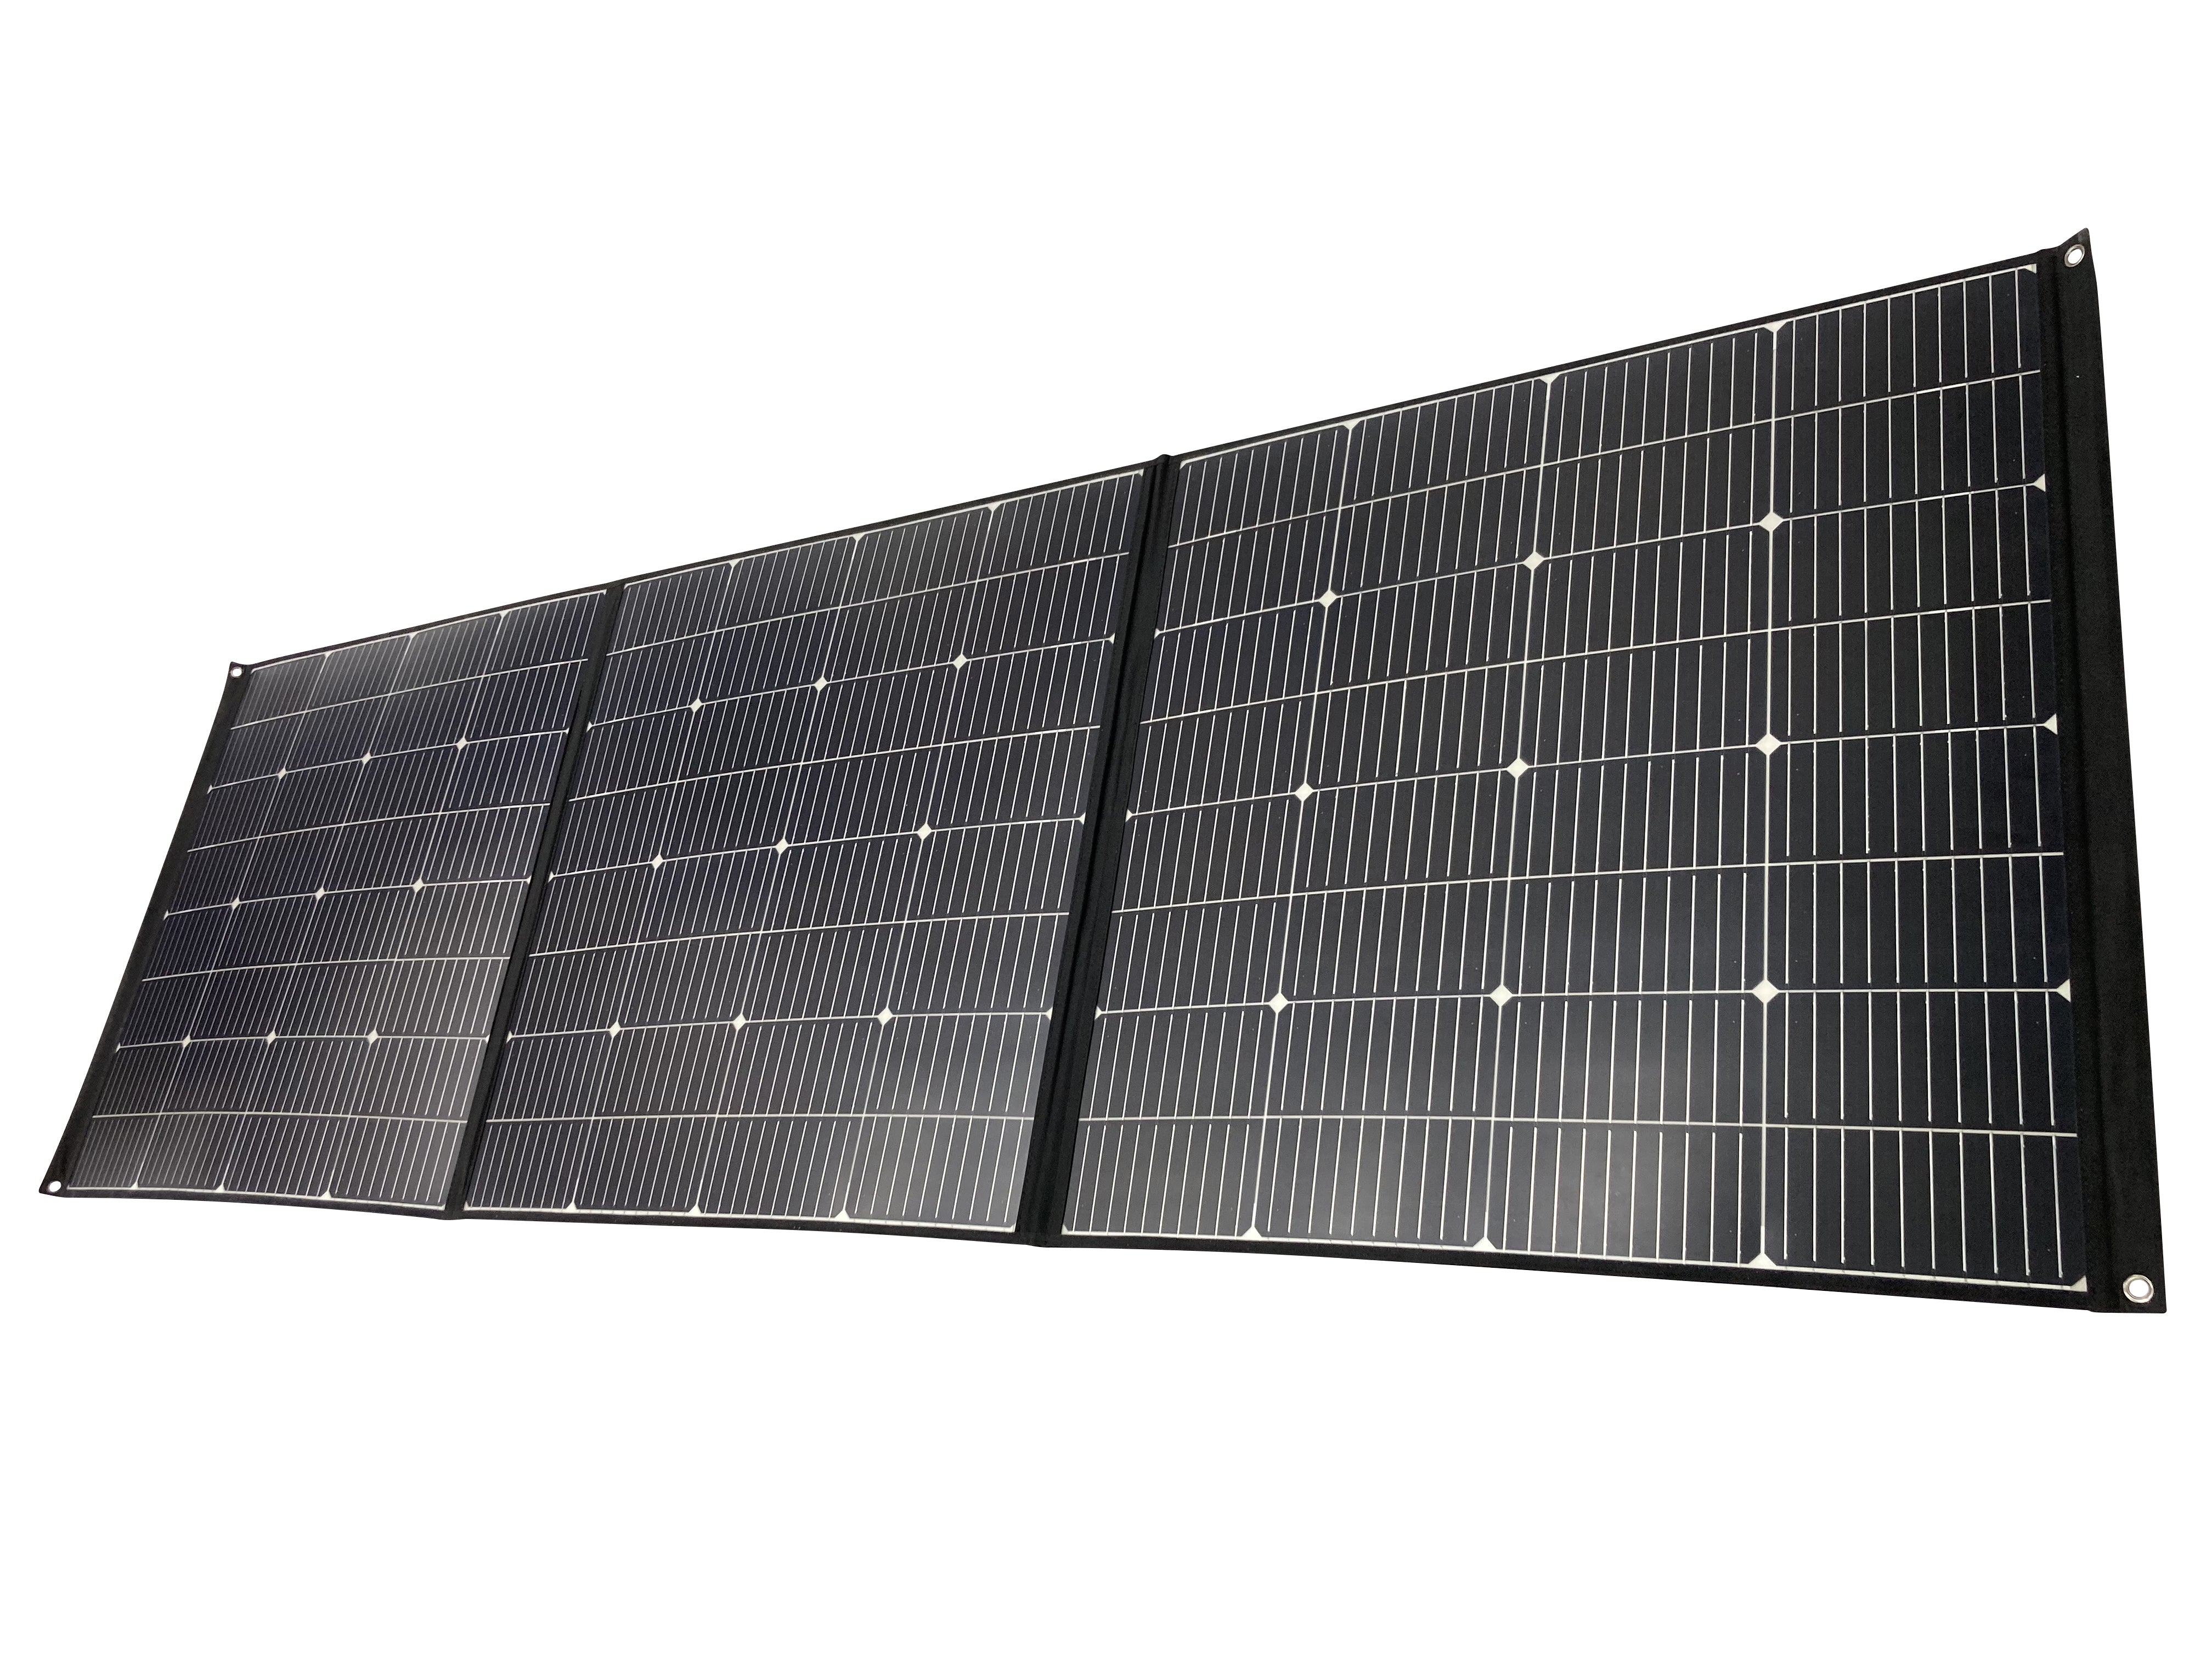 <transcy>200W Foldable Portable Solar Charging Panel</transcy>